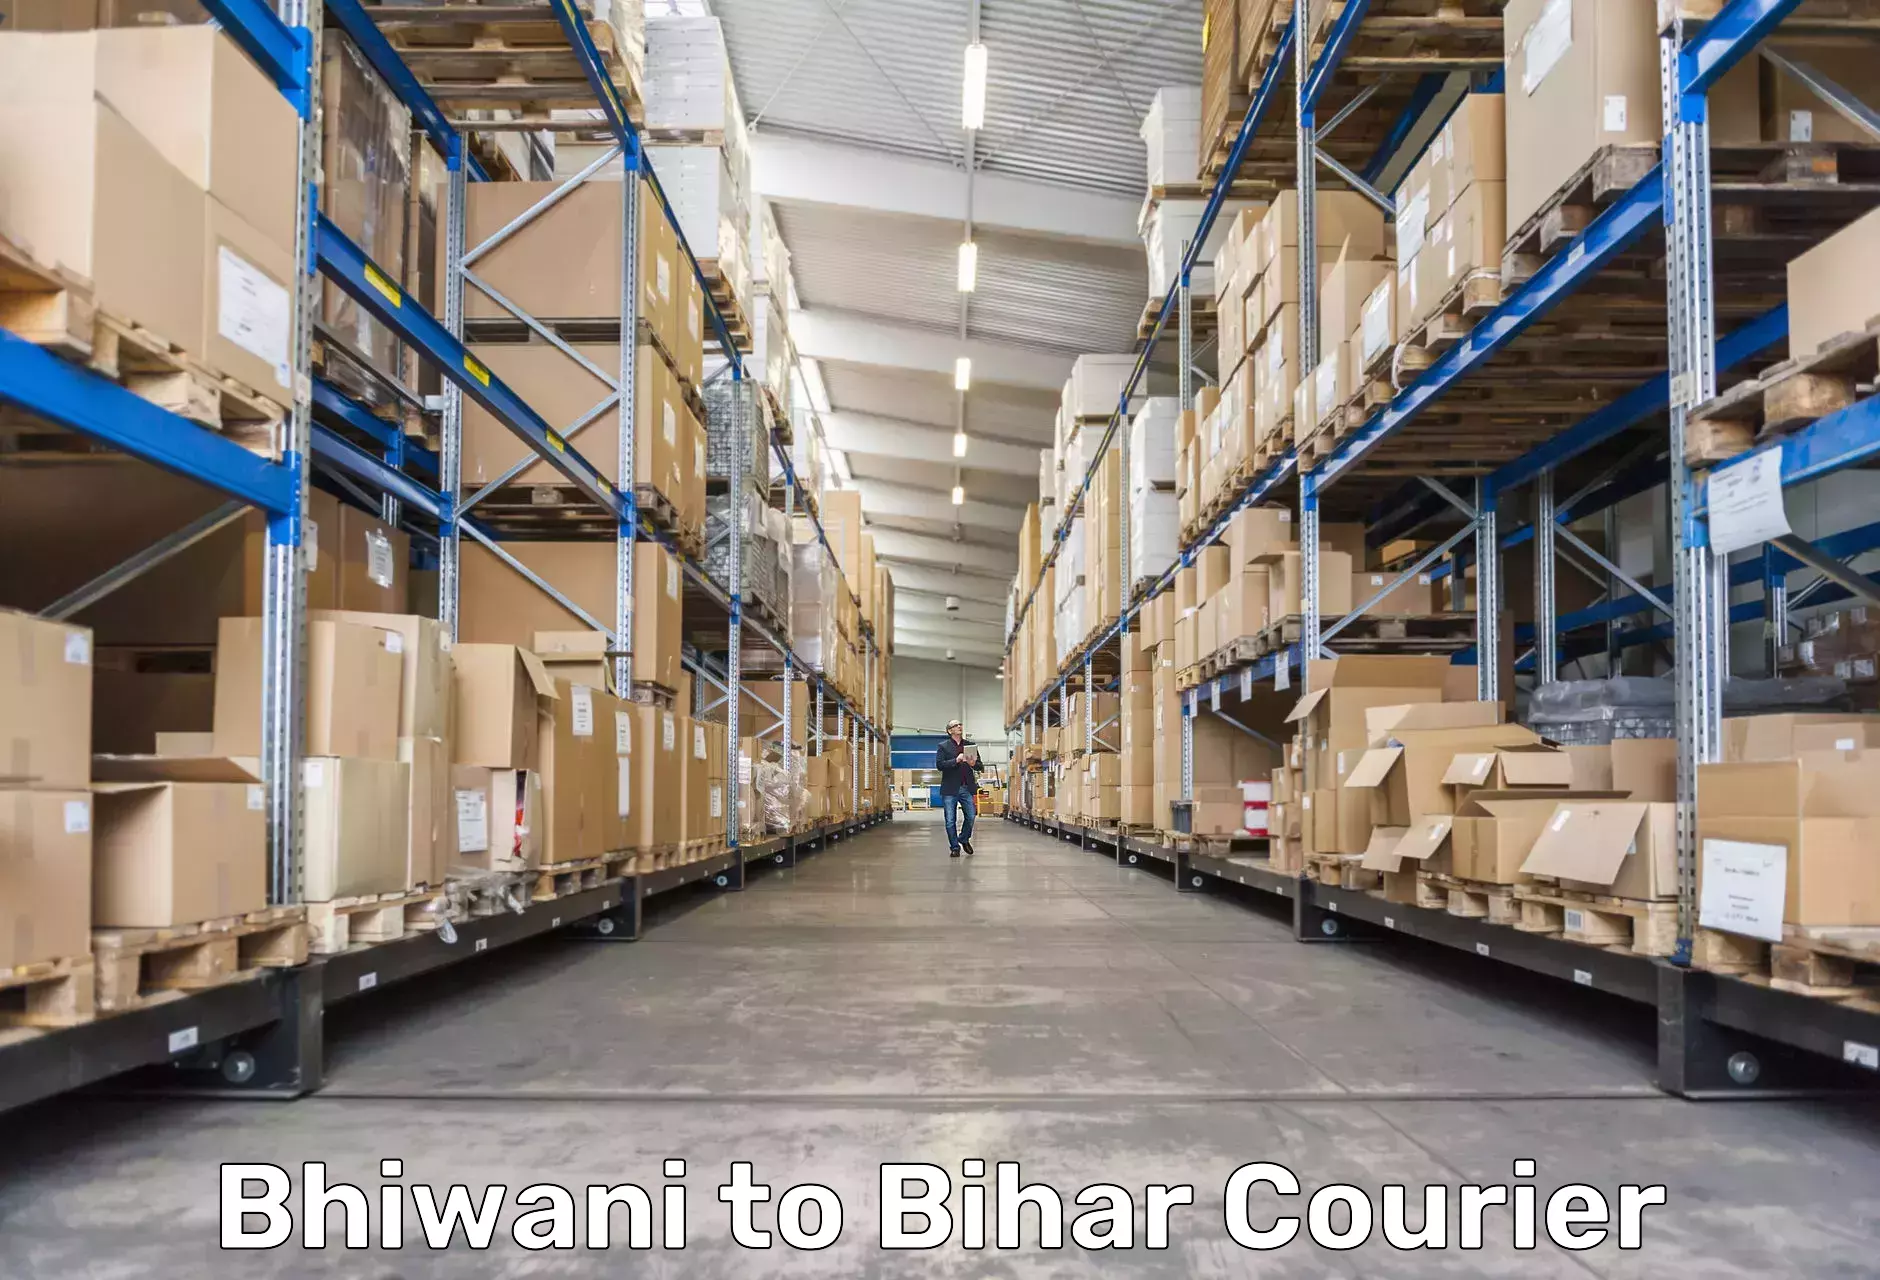 Courier app Bhiwani to Dighwara